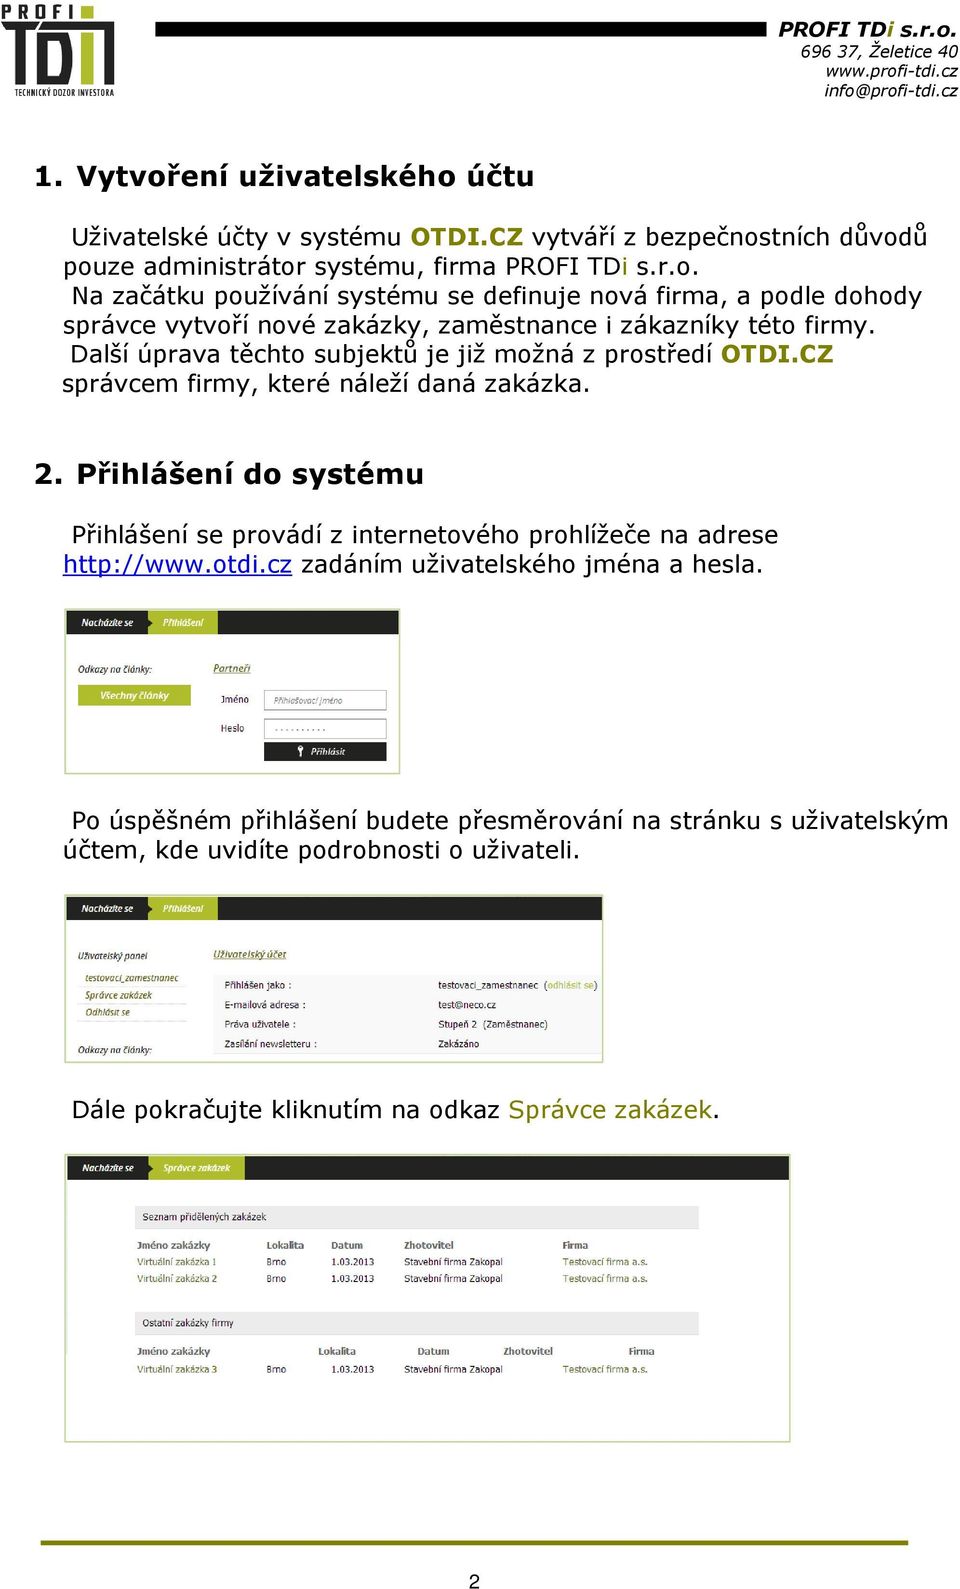 Přihlášení do systému Přihlášení se provádí z internetového prohlížeče na adrese http://www.otdi.cz zadáním uživatelského jména a hesla.